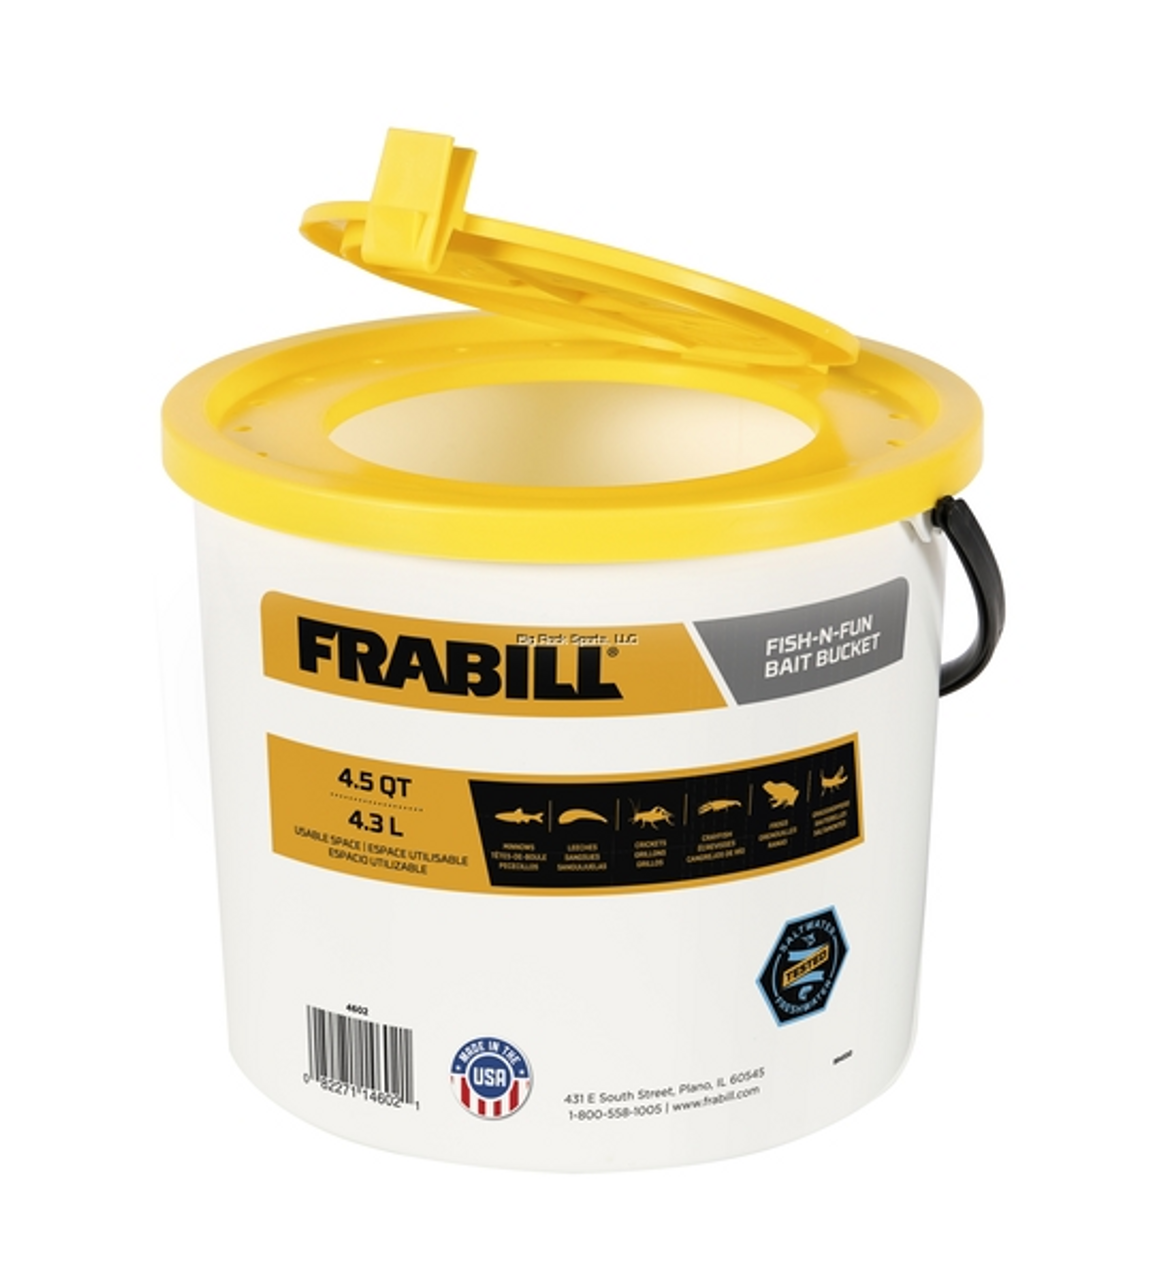 Frabill Fish-N-Fun, 4.5 Qt  Bait Bucket